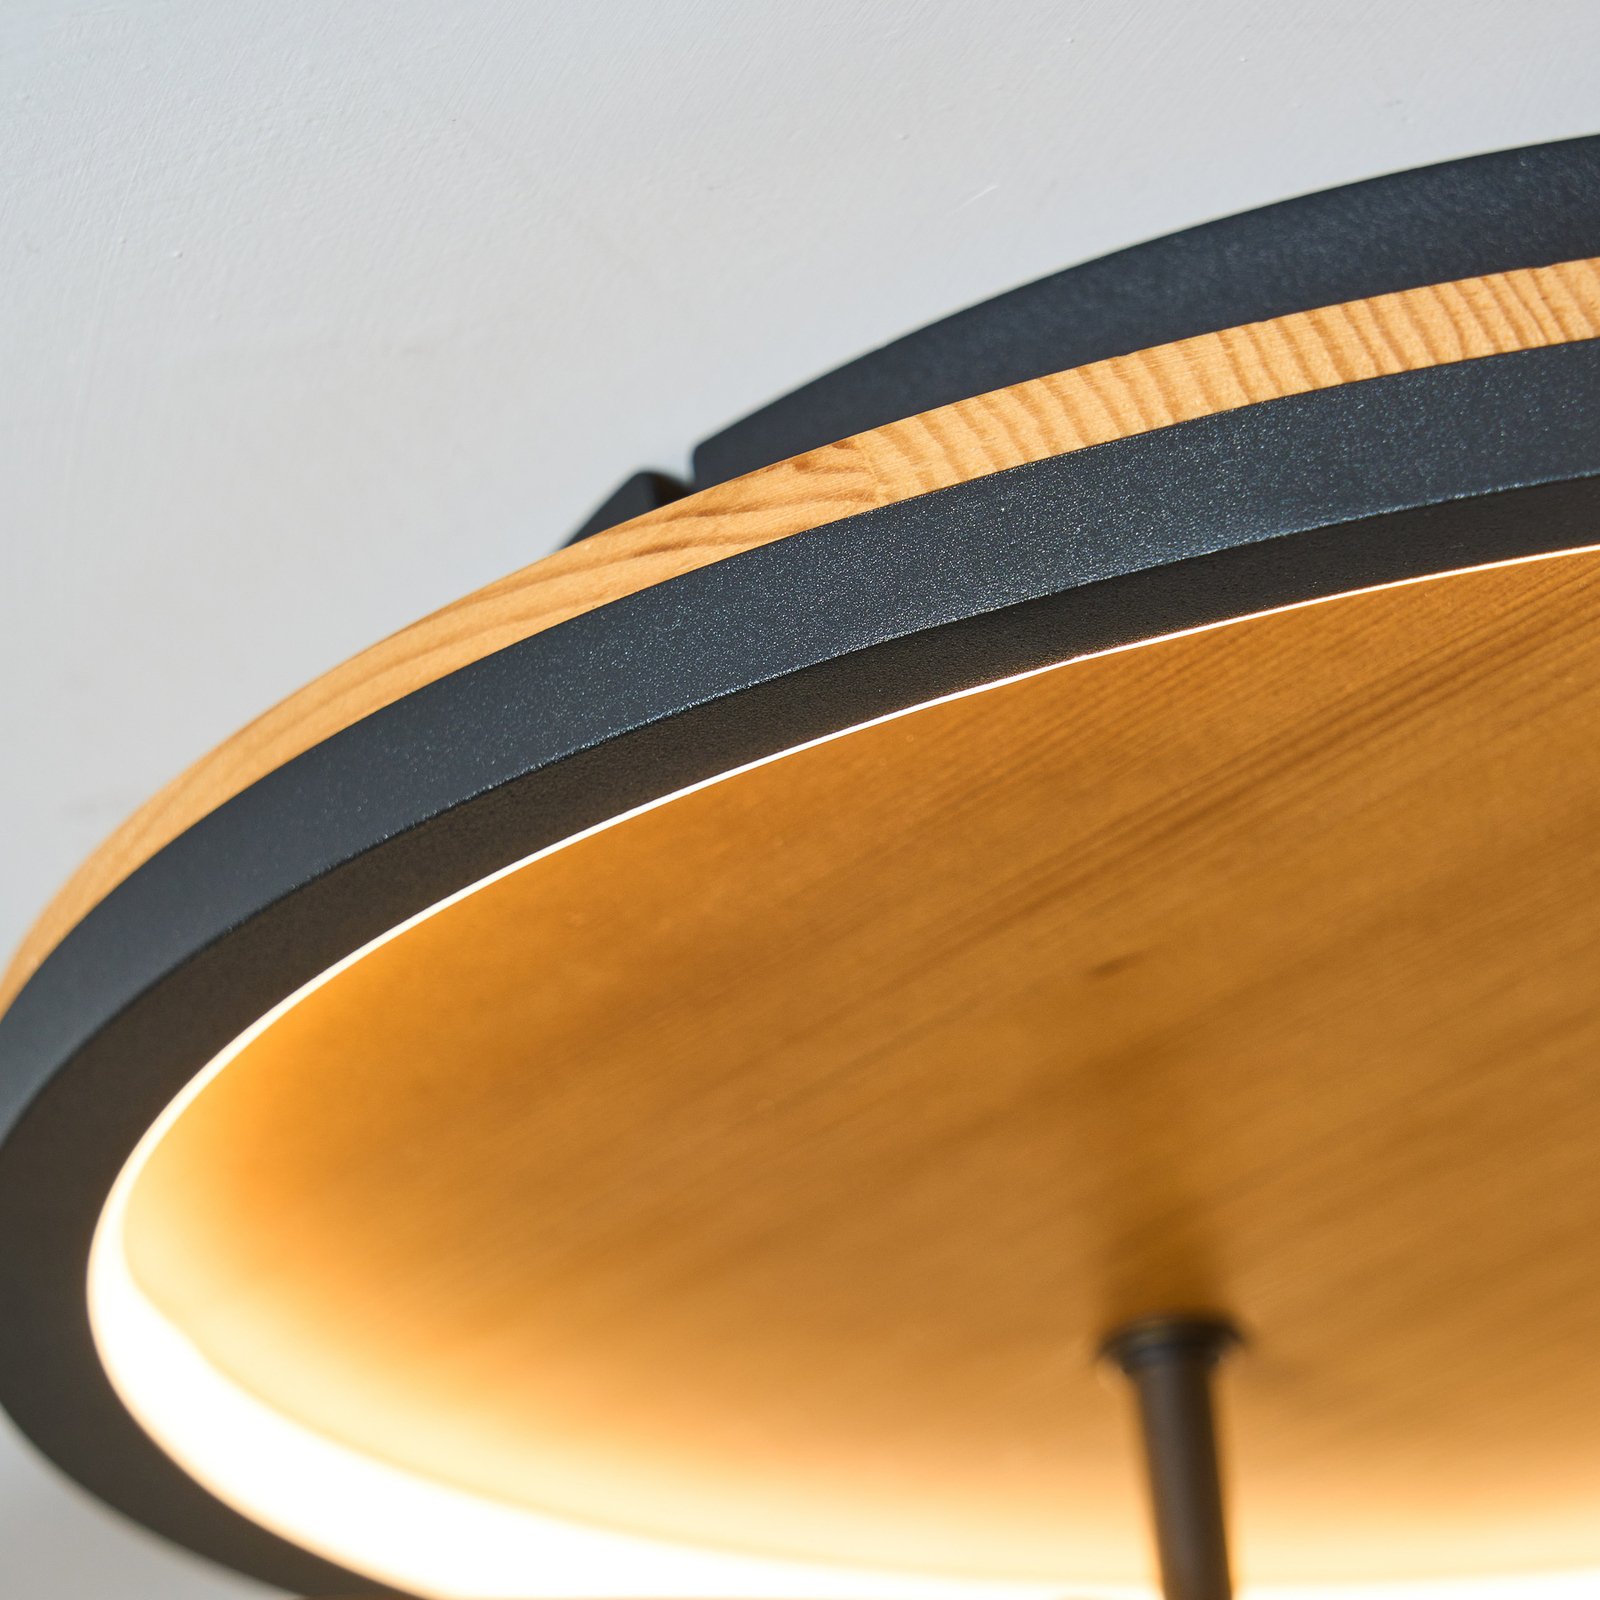 Stropní svítidlo Kiru LED, borovice, délka 87,4 cm, 2 světla, dřevo